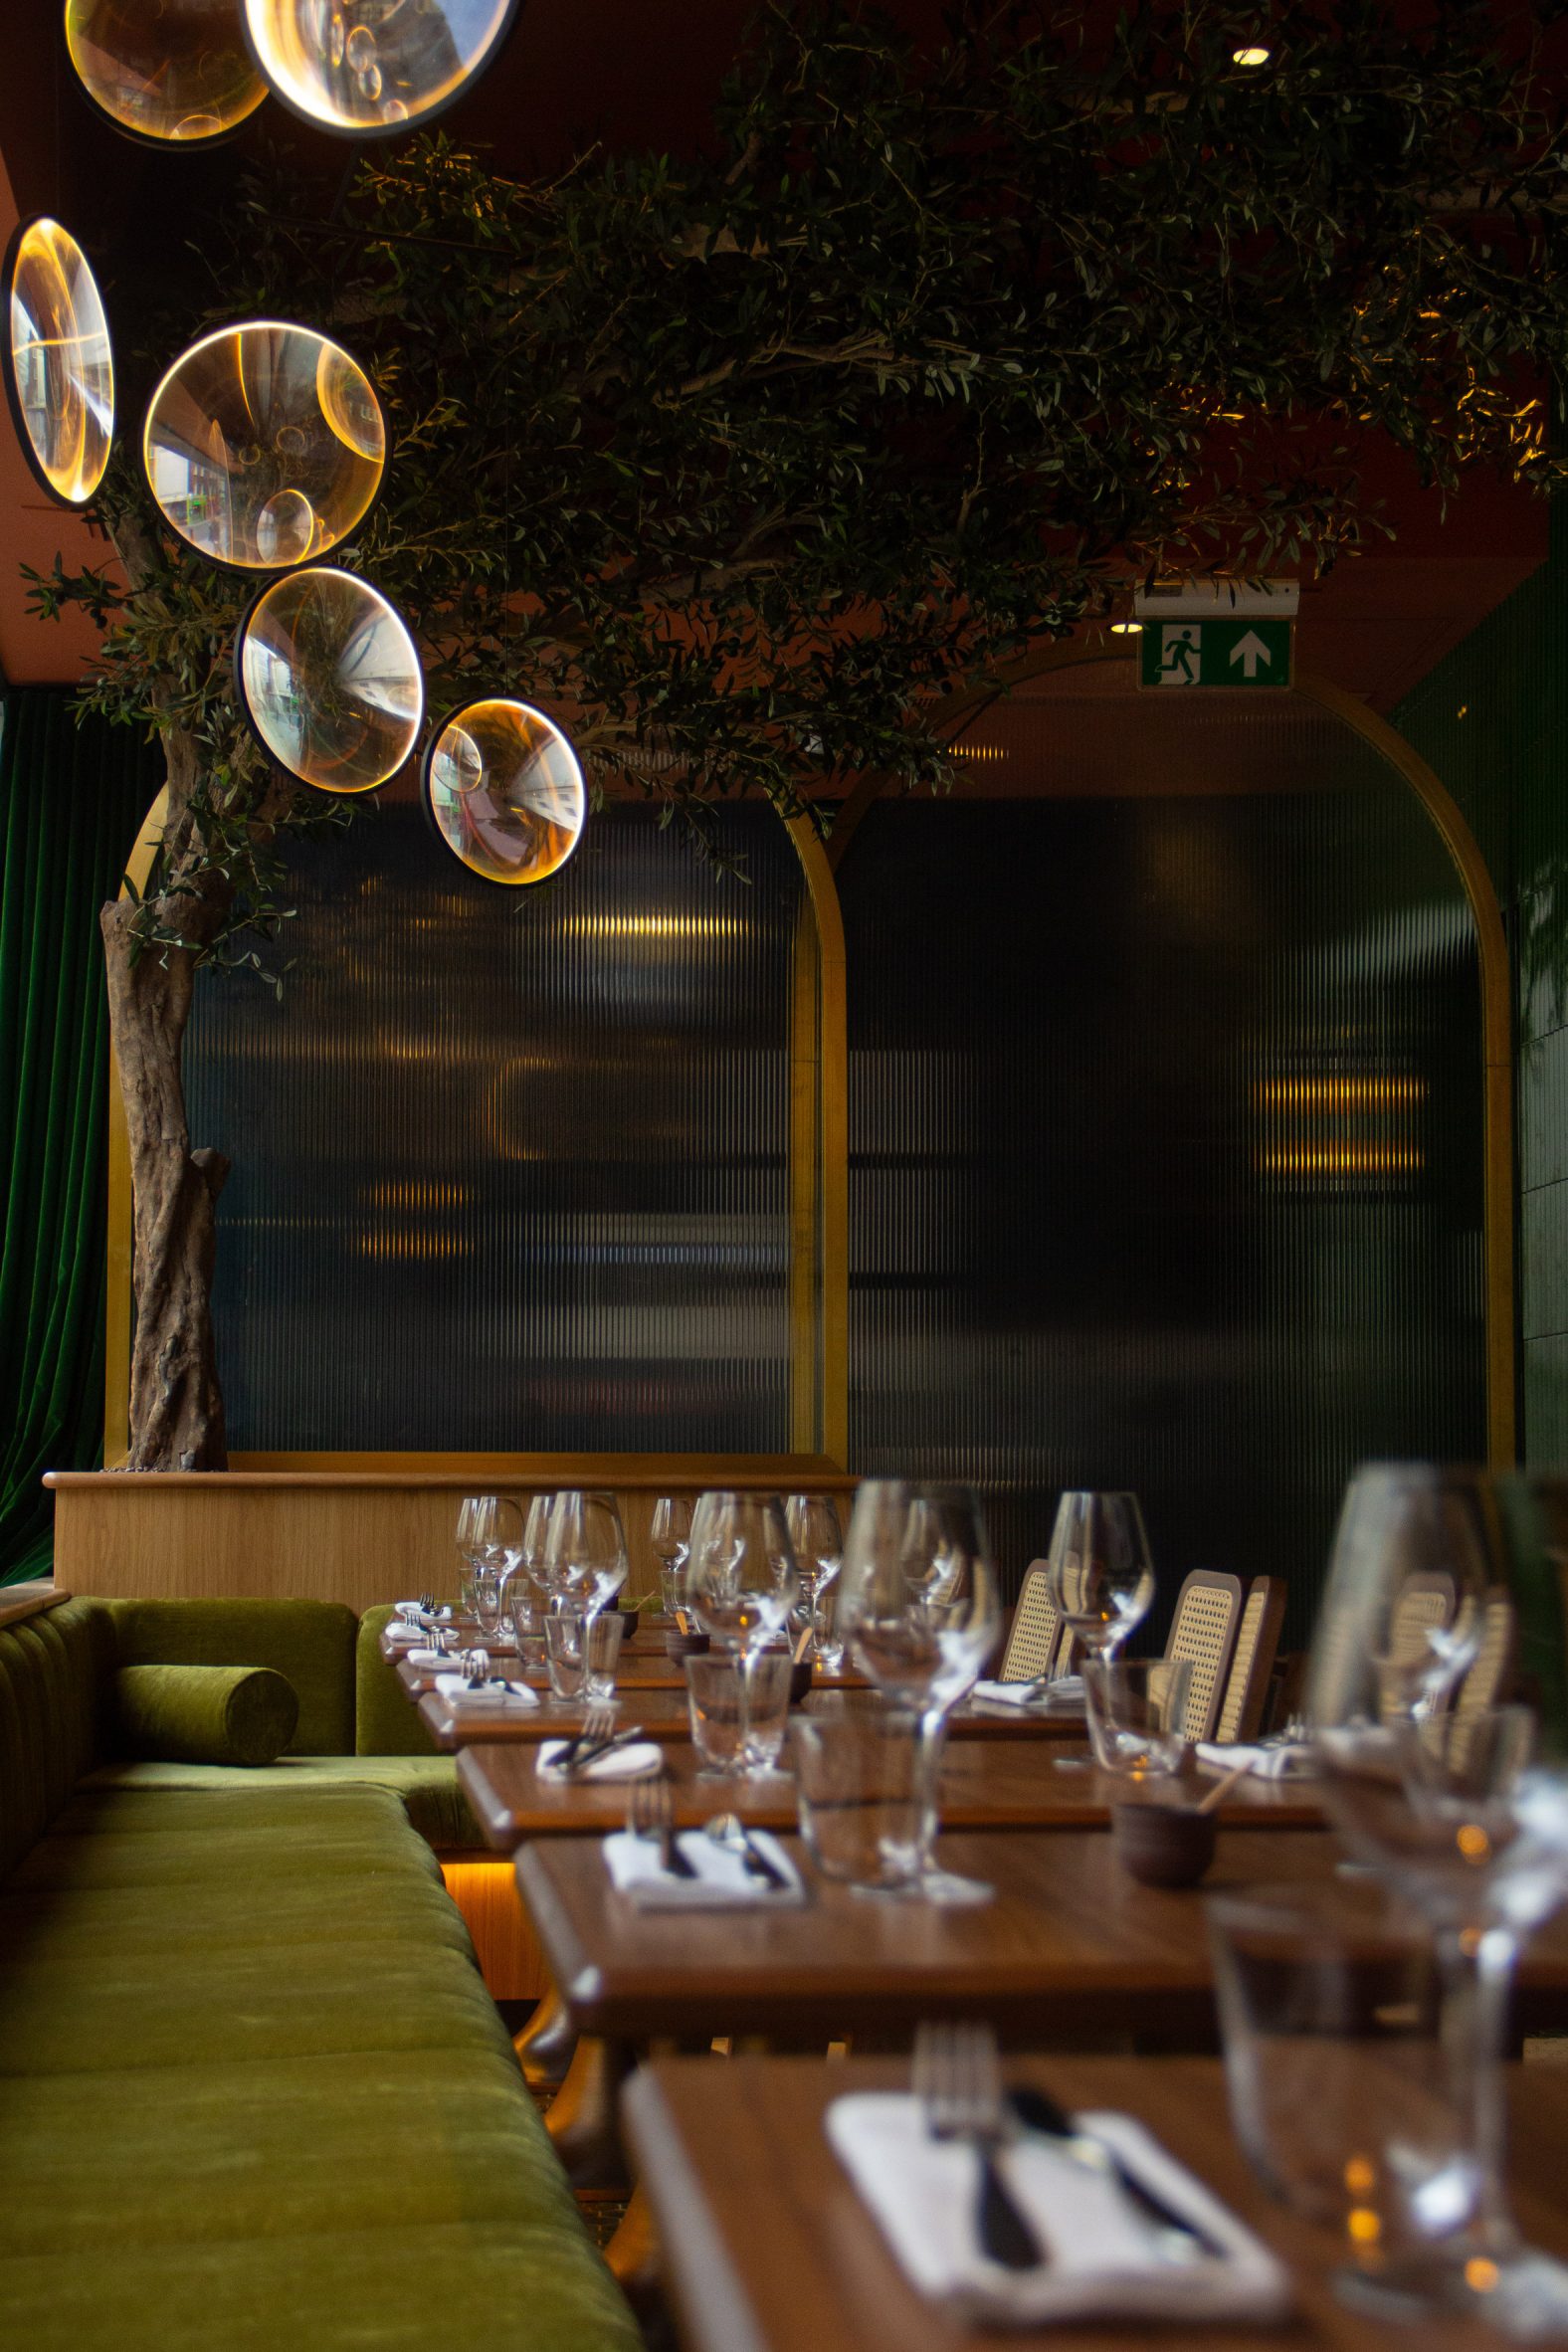 Daroco Soho restaurant designed by Olivier Delannoy